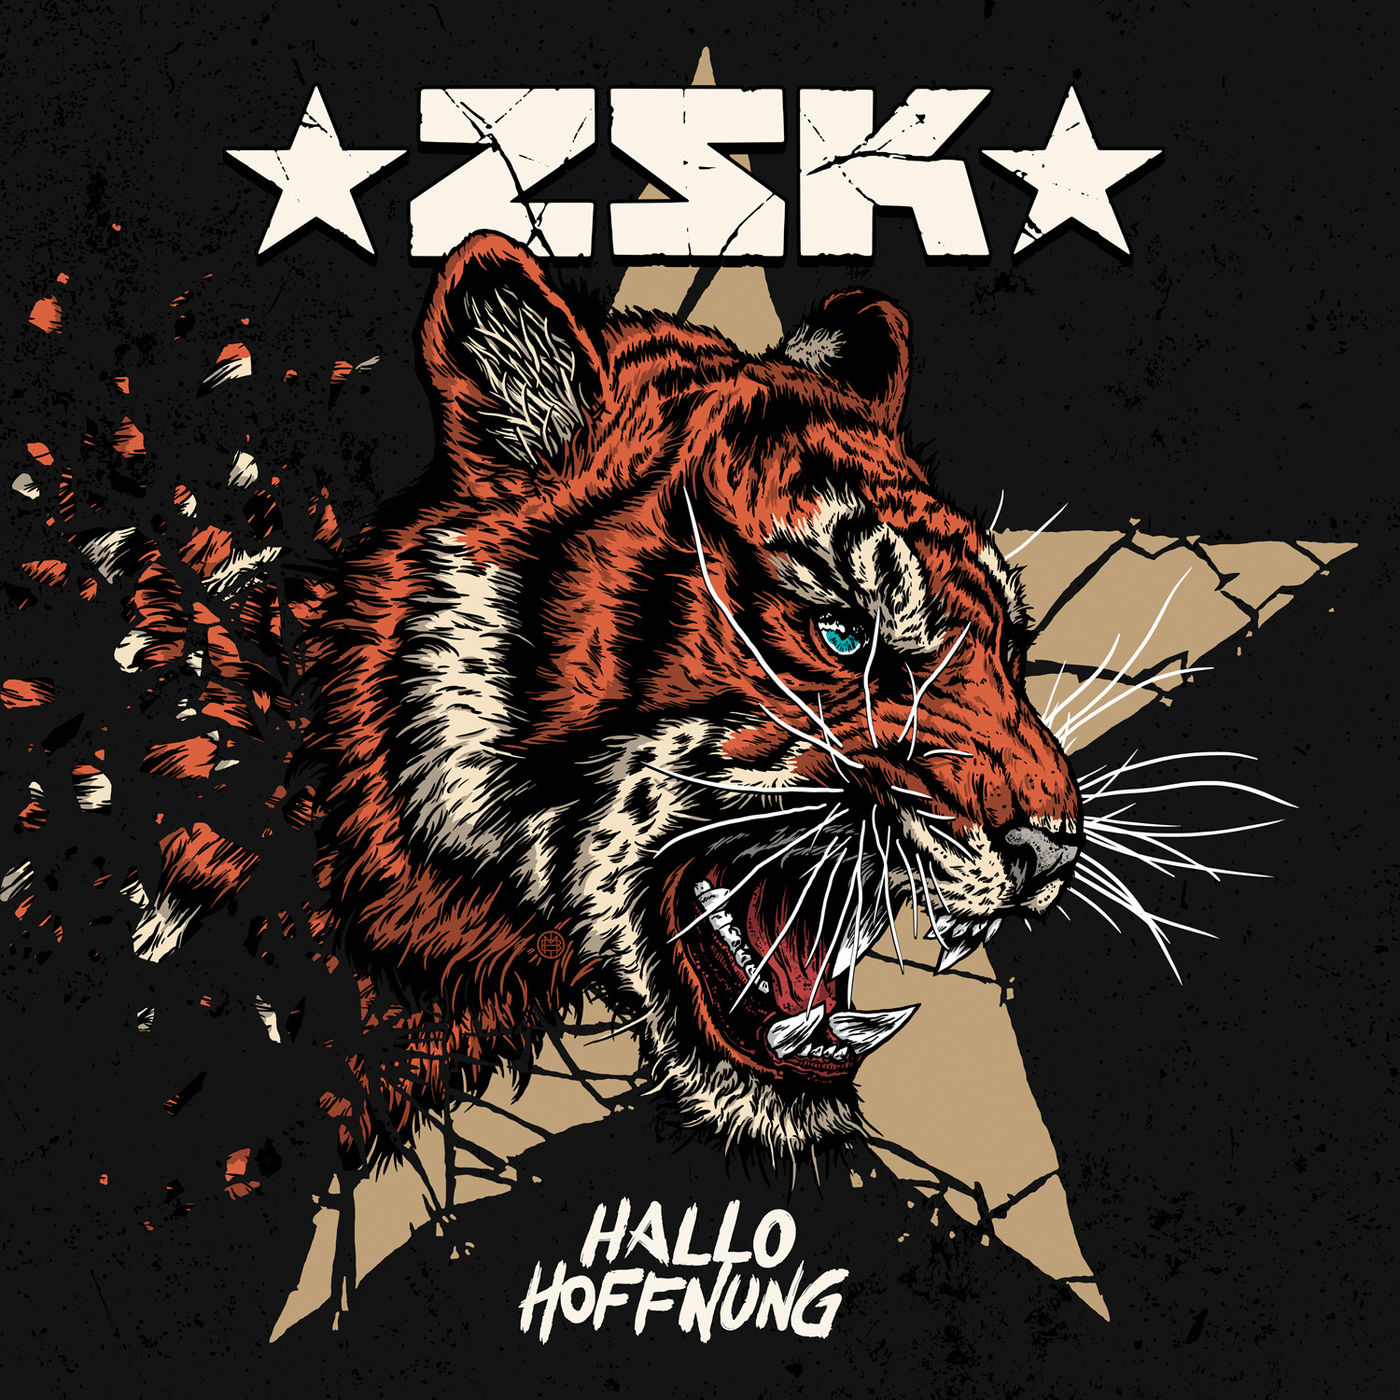 ZSK - Hallo Hoffnung (2018) Album Info